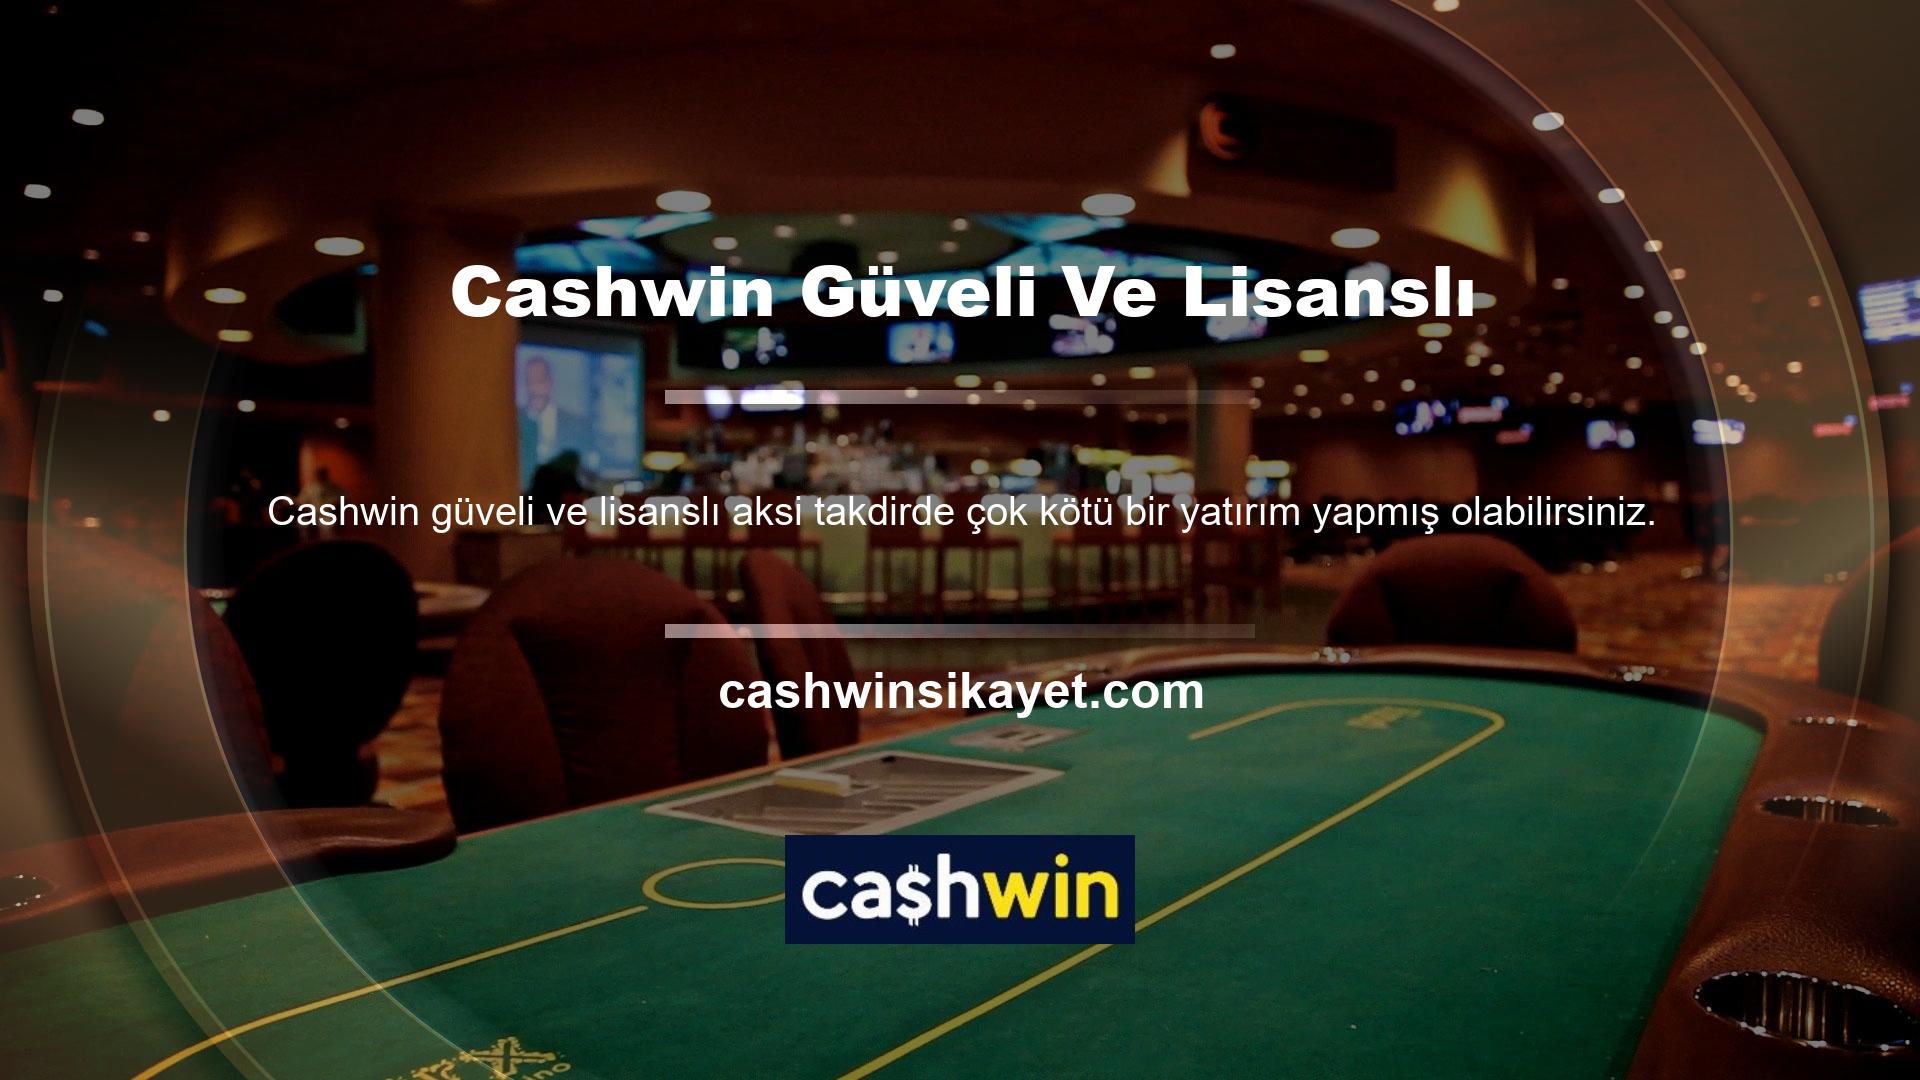 Cashwin en güvenilir ve lisanslı casino sitelerinden biri olduğu için bu tür soru işaretlerine gerek yok